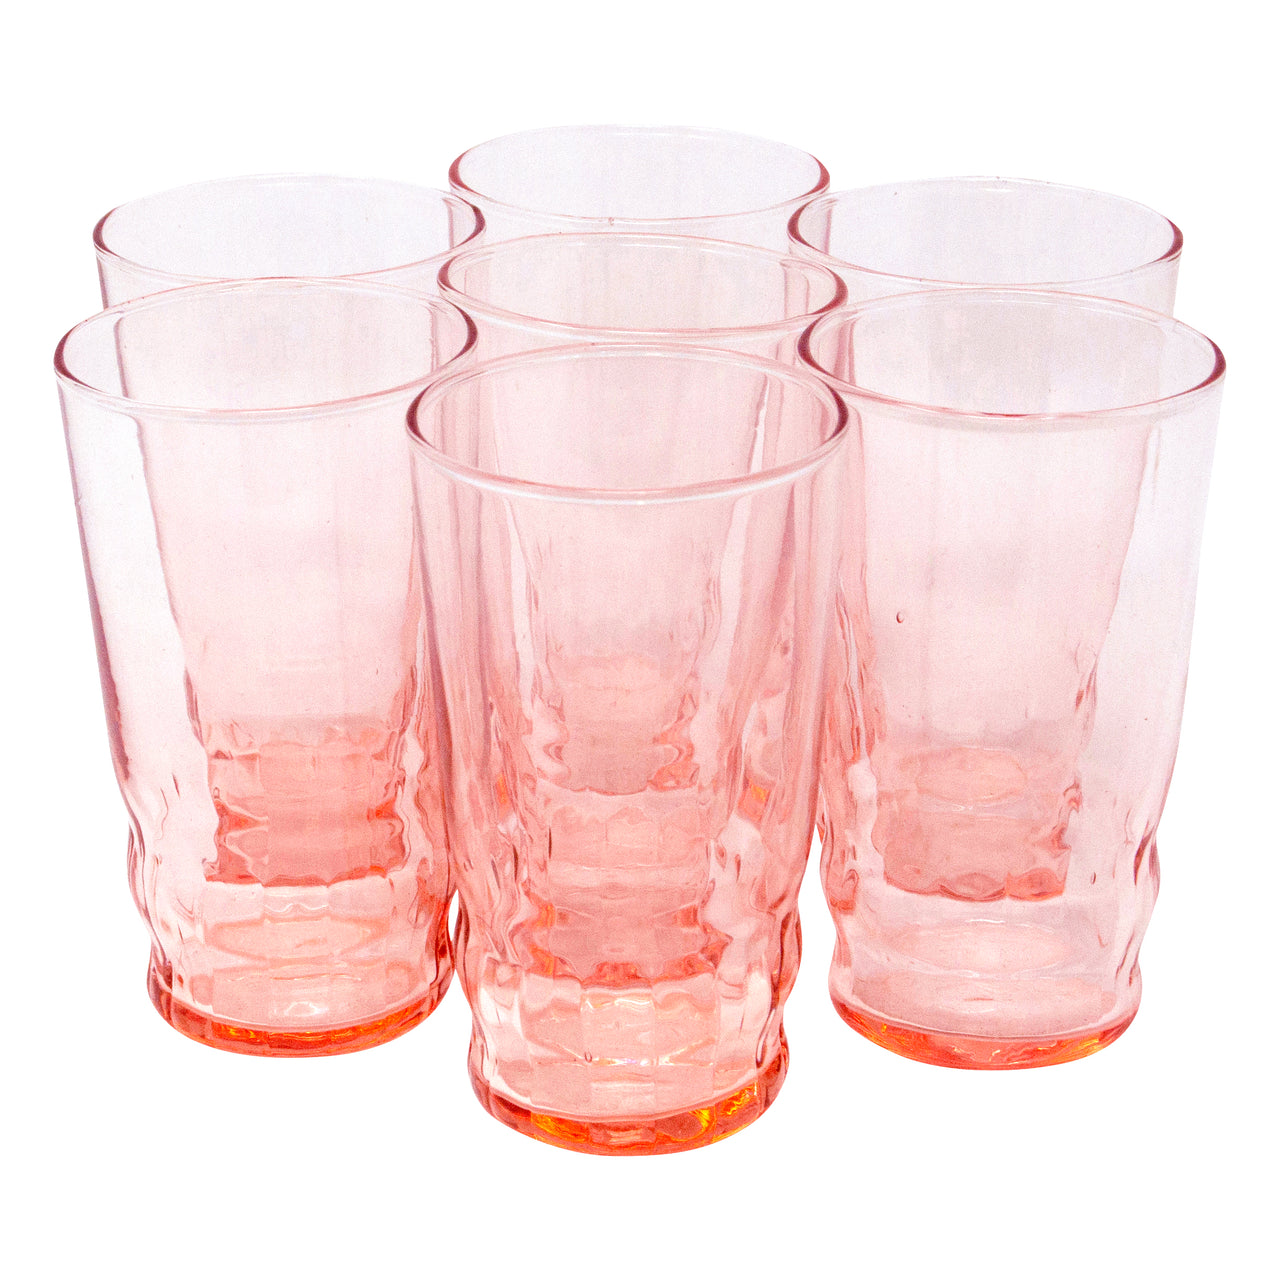 Vintage Depression Glass Pink Cocktail Glasses, The Hour Shop